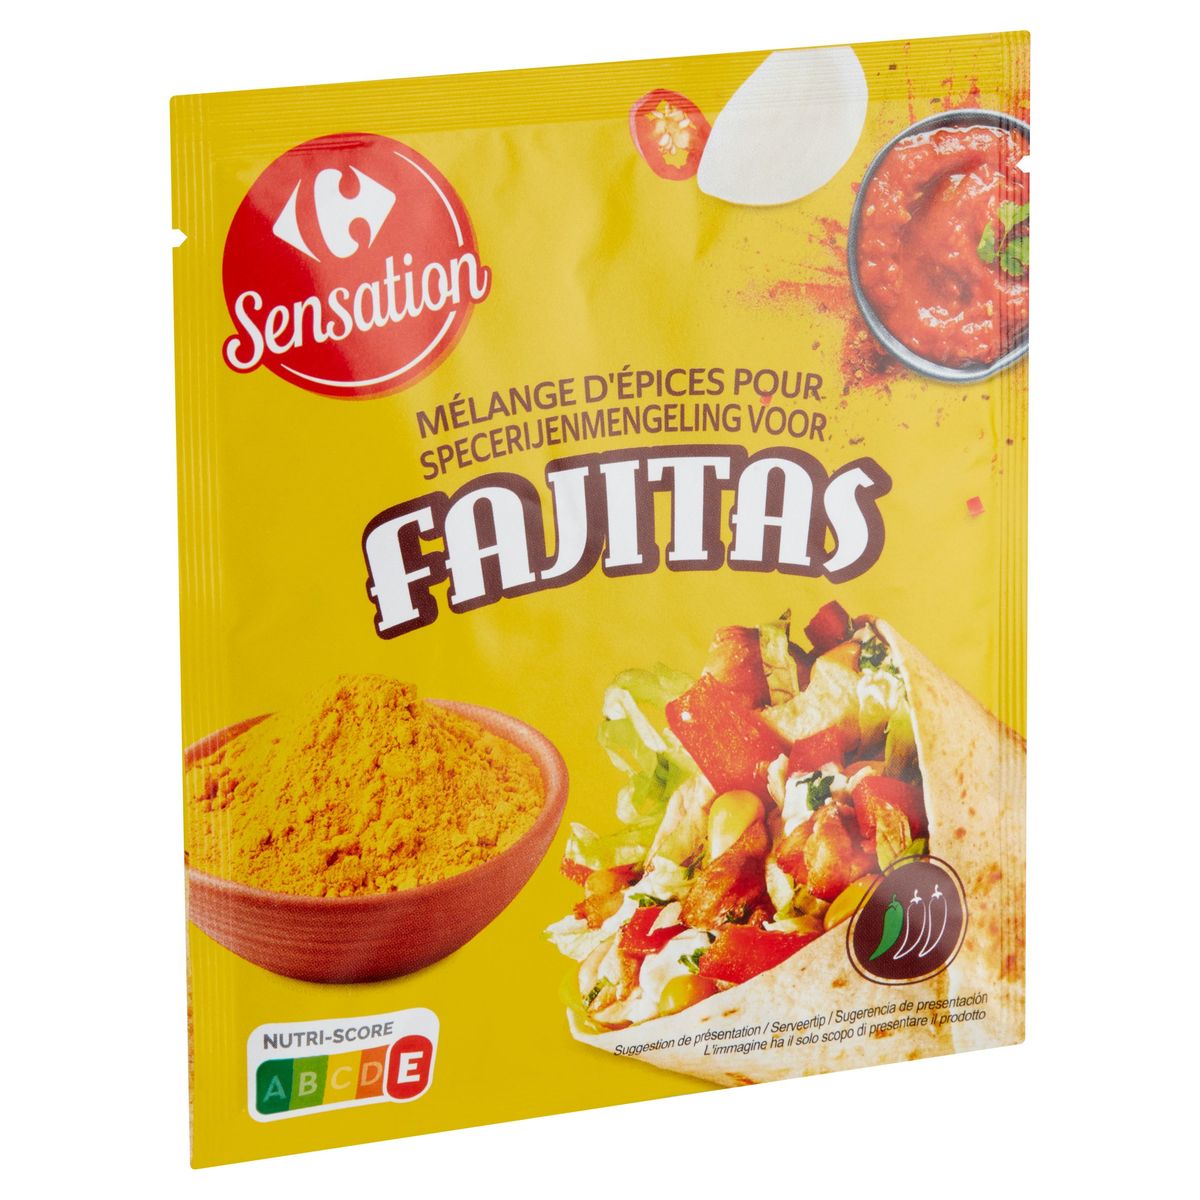 Carrefour Sensation Specerijenmengeling voor Fajitas 30 g